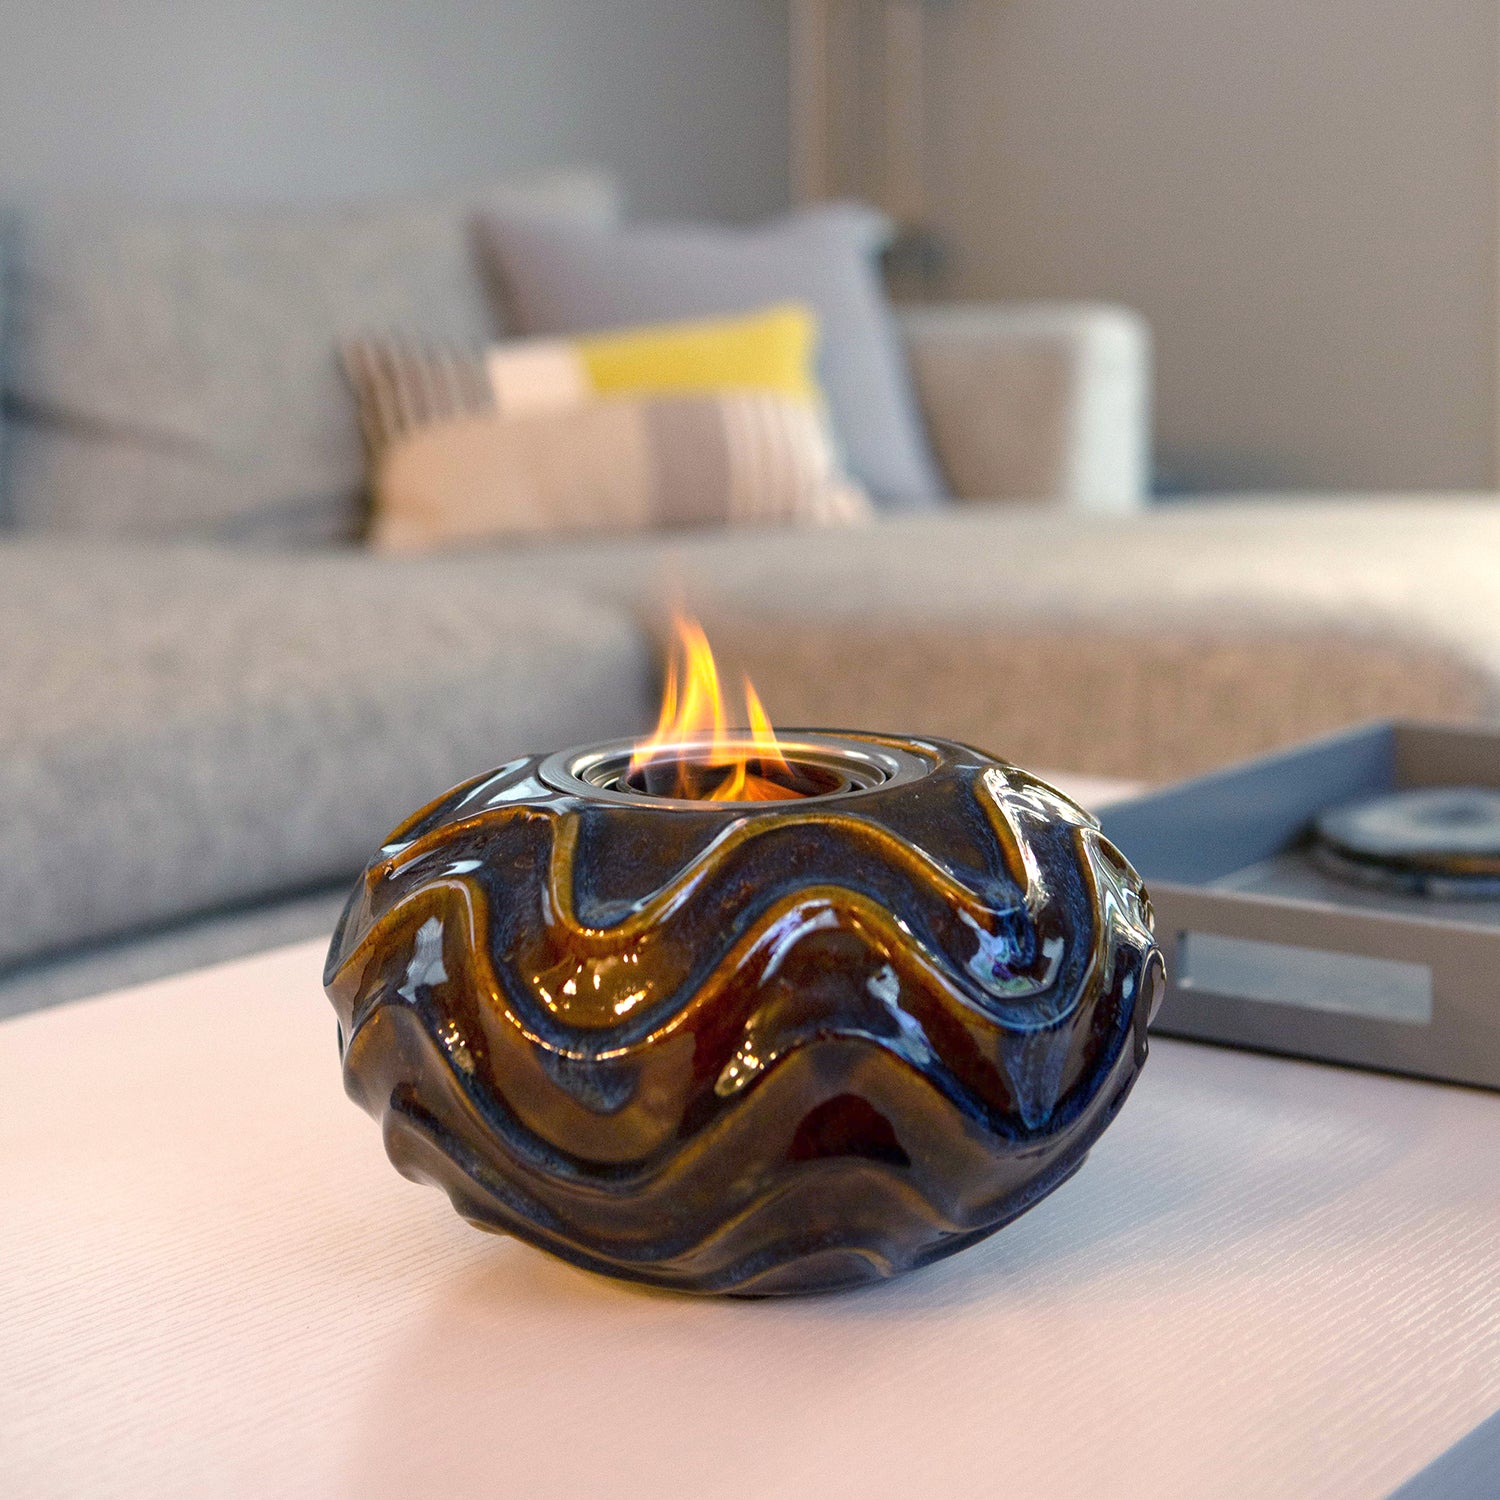 Oceana Ceramic Fireplace